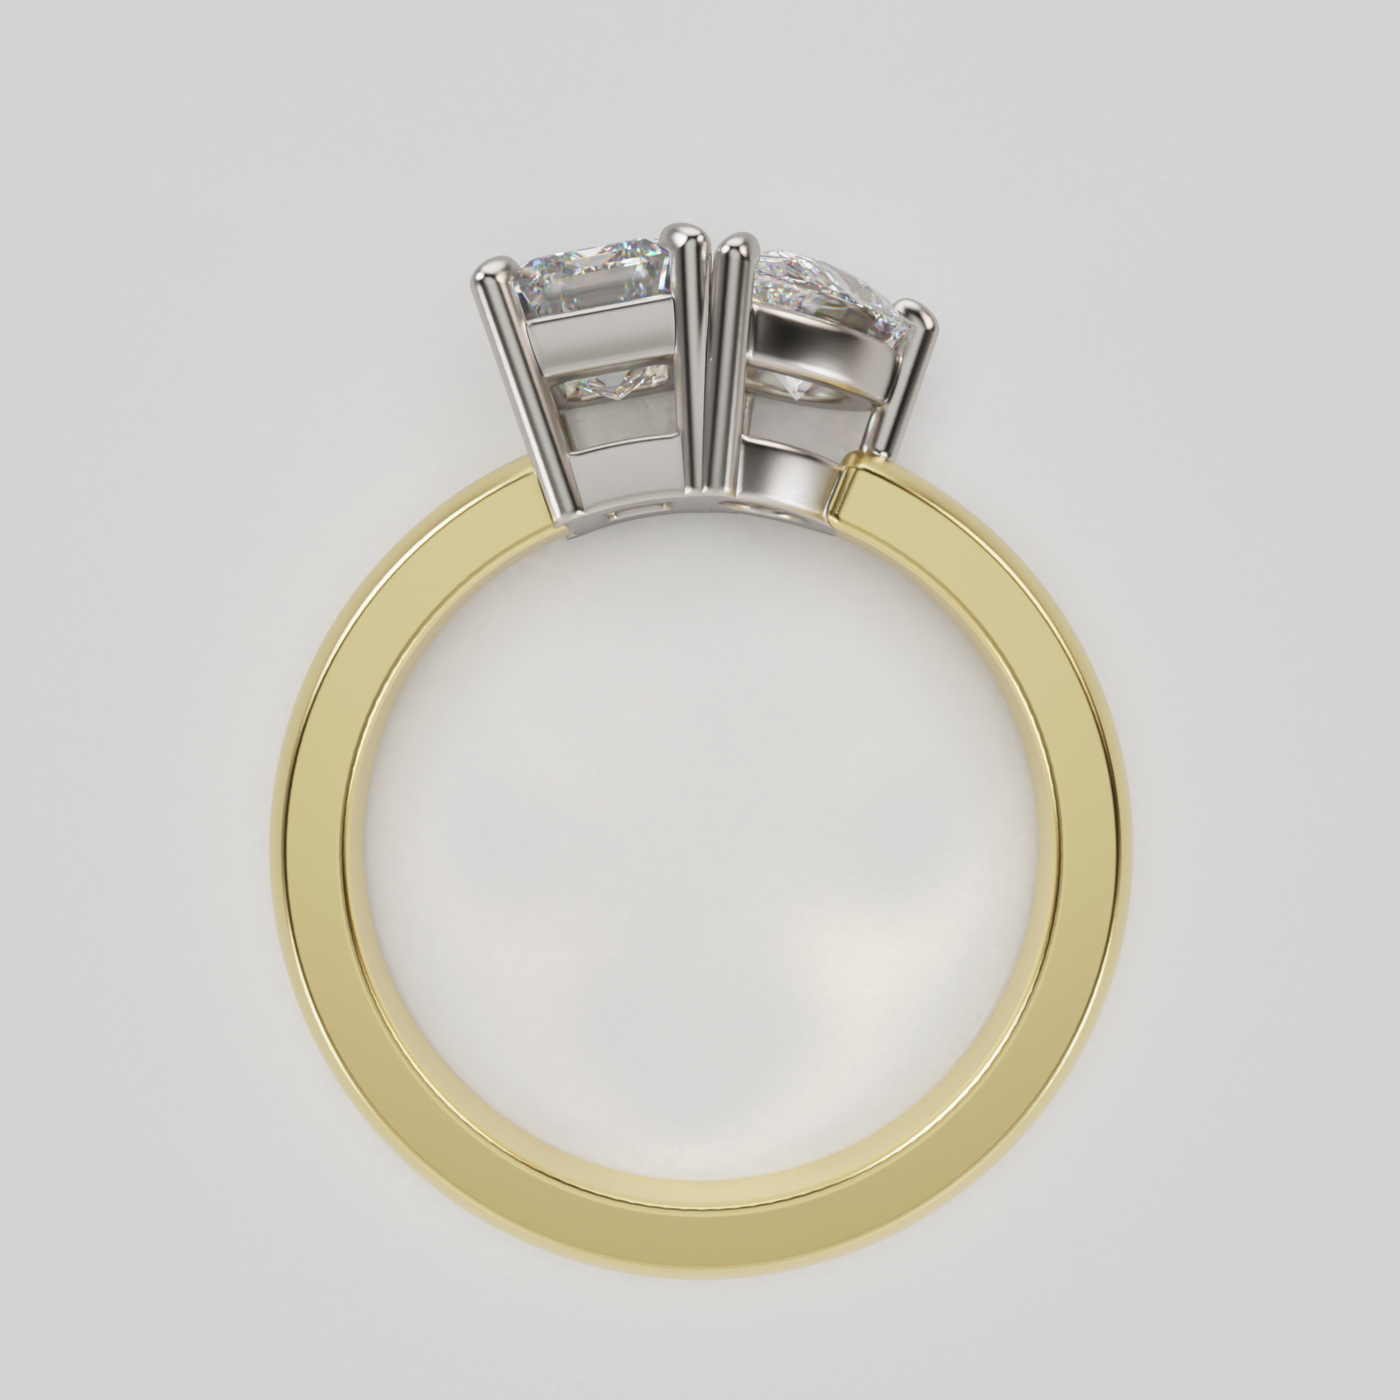 "Emily" Toi et Moi Lab Grown Diamond Ring